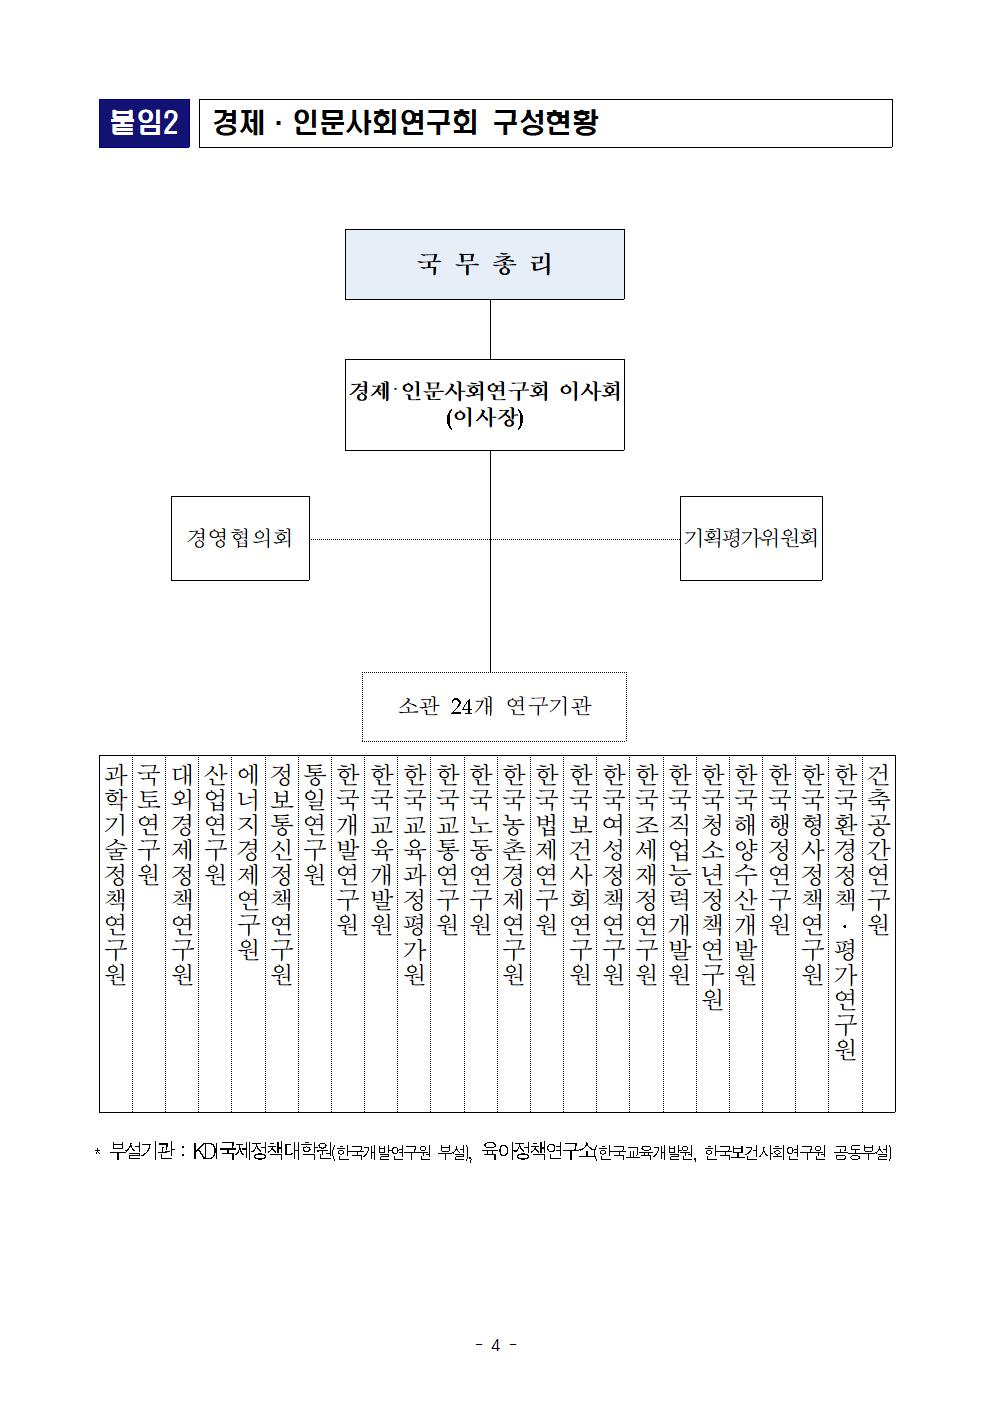 첨부파일참고 : 경제인문사회연구회 이사장 임명장 수여식 (최종, 배포).hwp